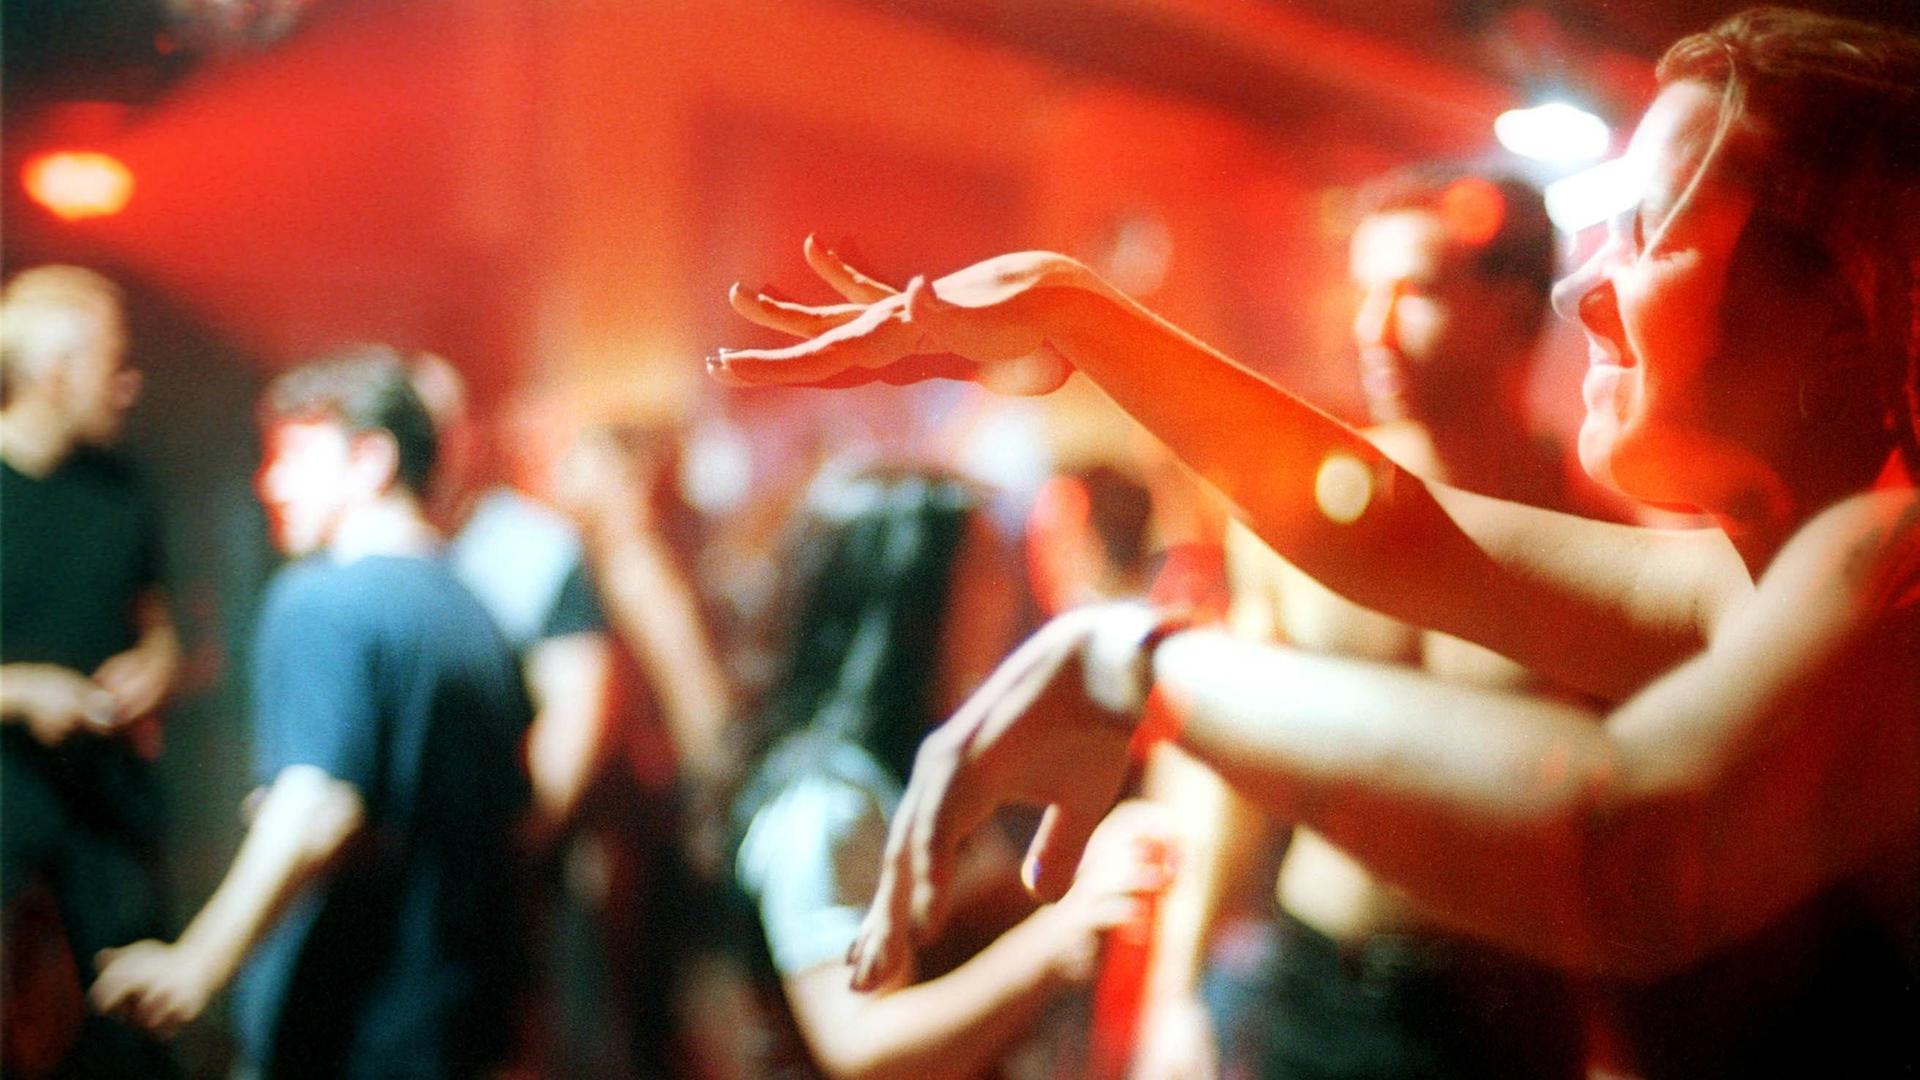 Ekstatisch tanzende Clubgänger im Berliner Club Tresor. Im Vordergrund rechts tanzt ein Mensch mit geschlossenen Augen und bewegt die Hände vor sich zur Musik.